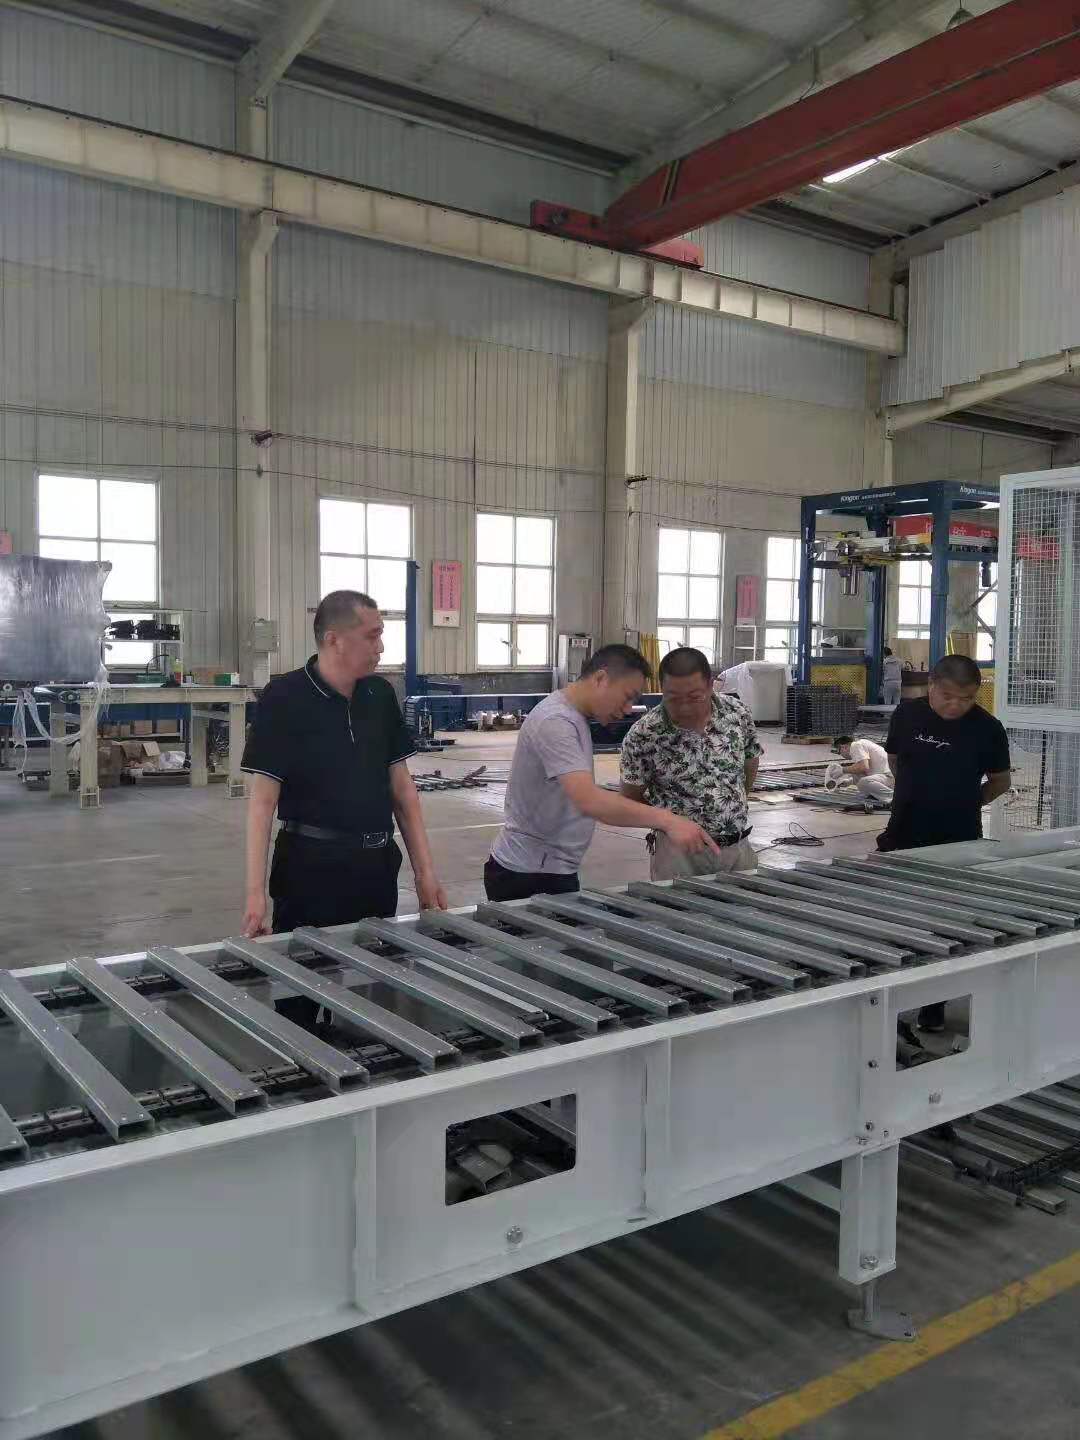 Rodillo transportador de China personalizado de fábrica, Sistema de precios de cintas transportadoras de rodillos impulsores